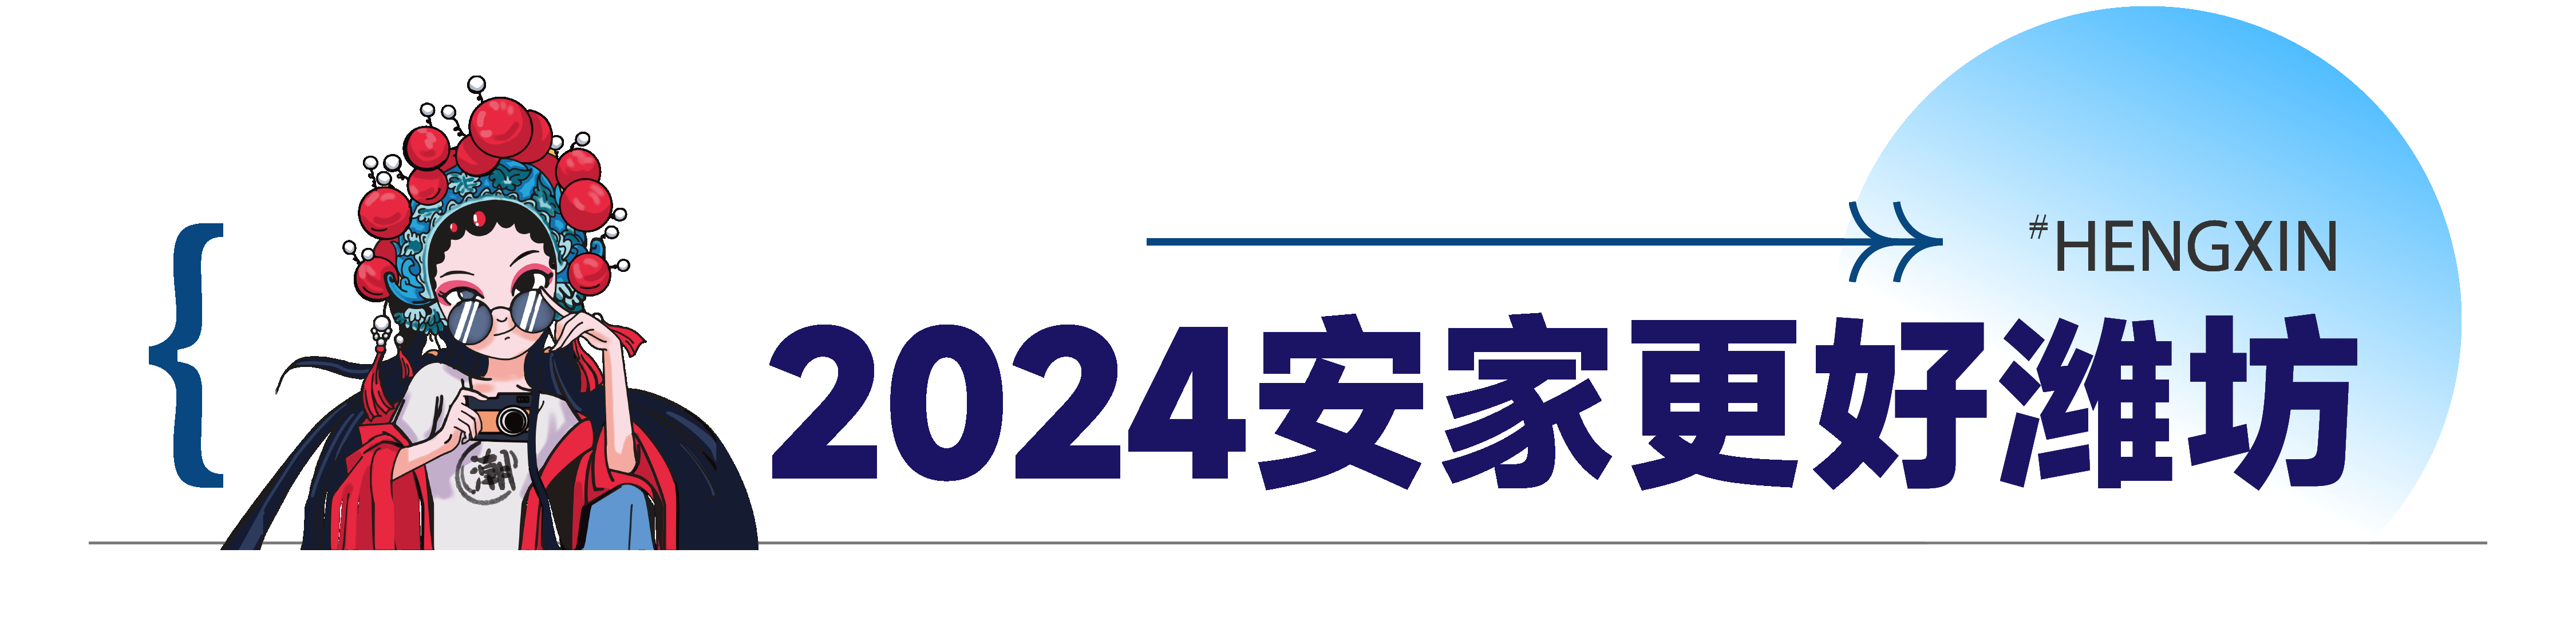 2024潍坊春季房展会本周六隆重开幕！恒信集团专栏开启